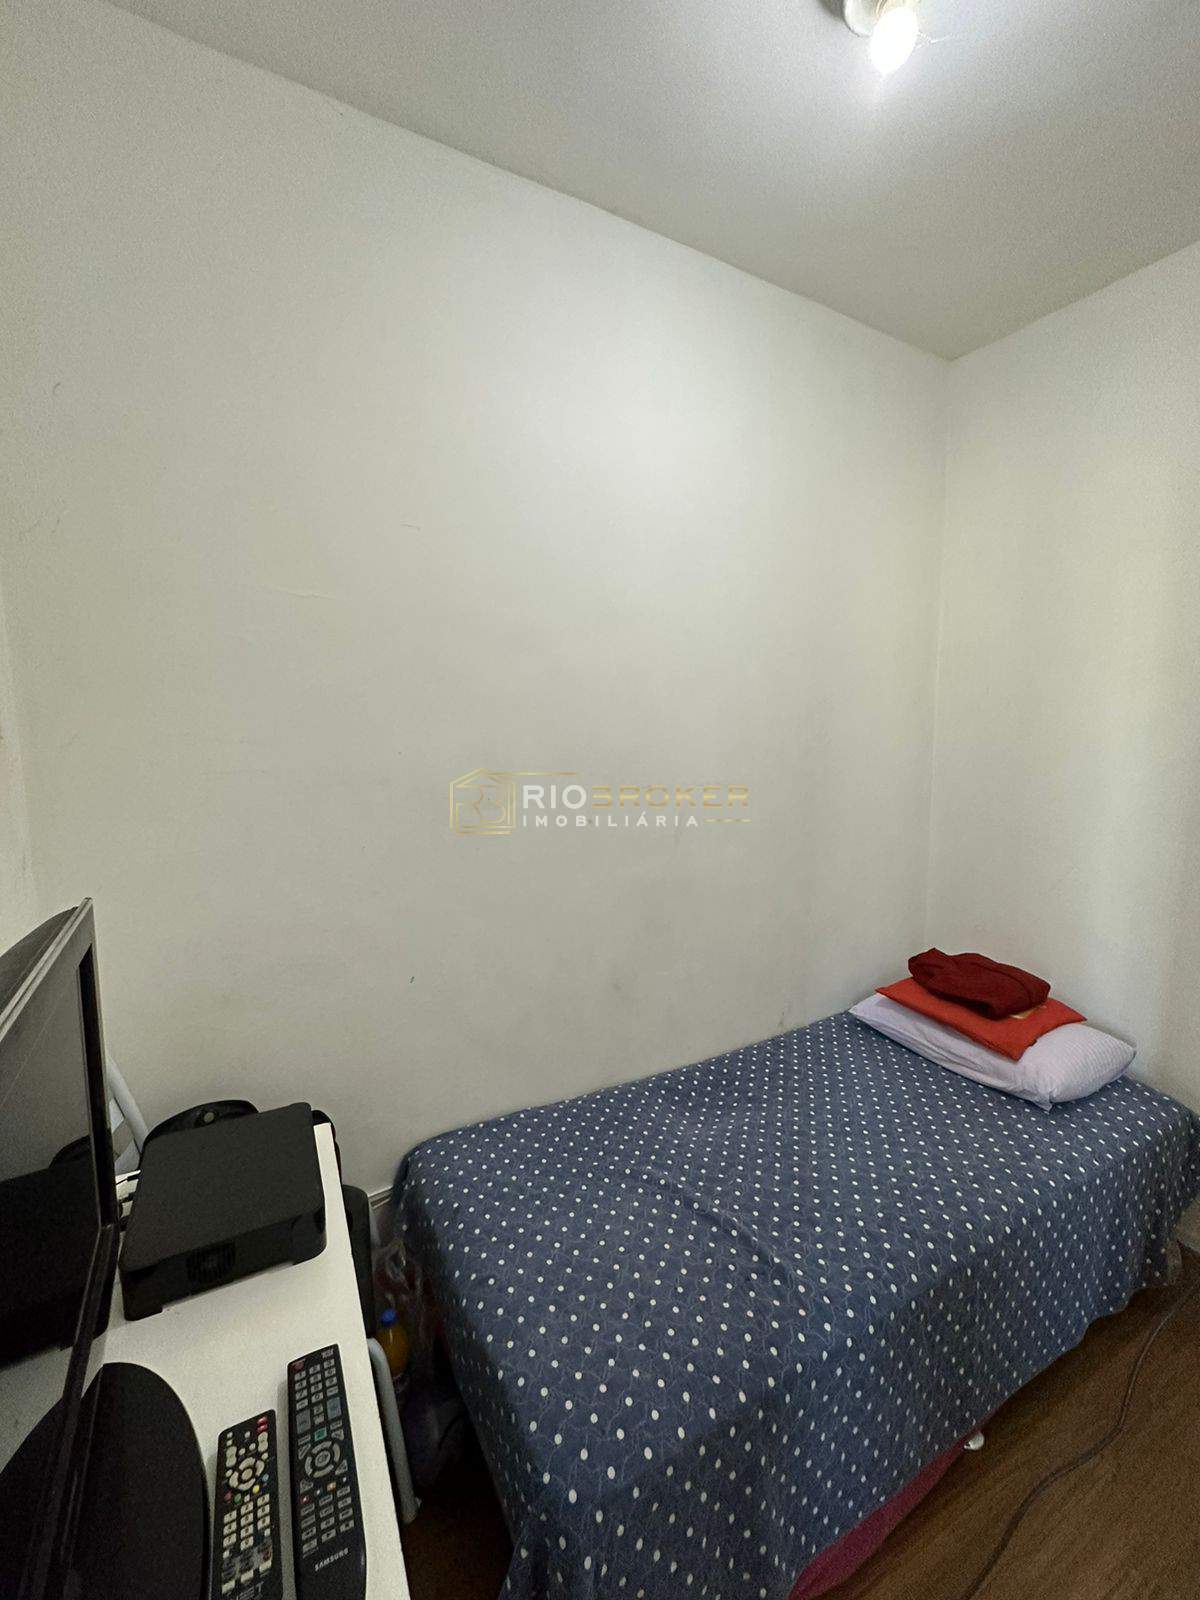 Apartamento de 2 quartos à venda - Jacarepaguá - Condomínio Promenade Gemiano